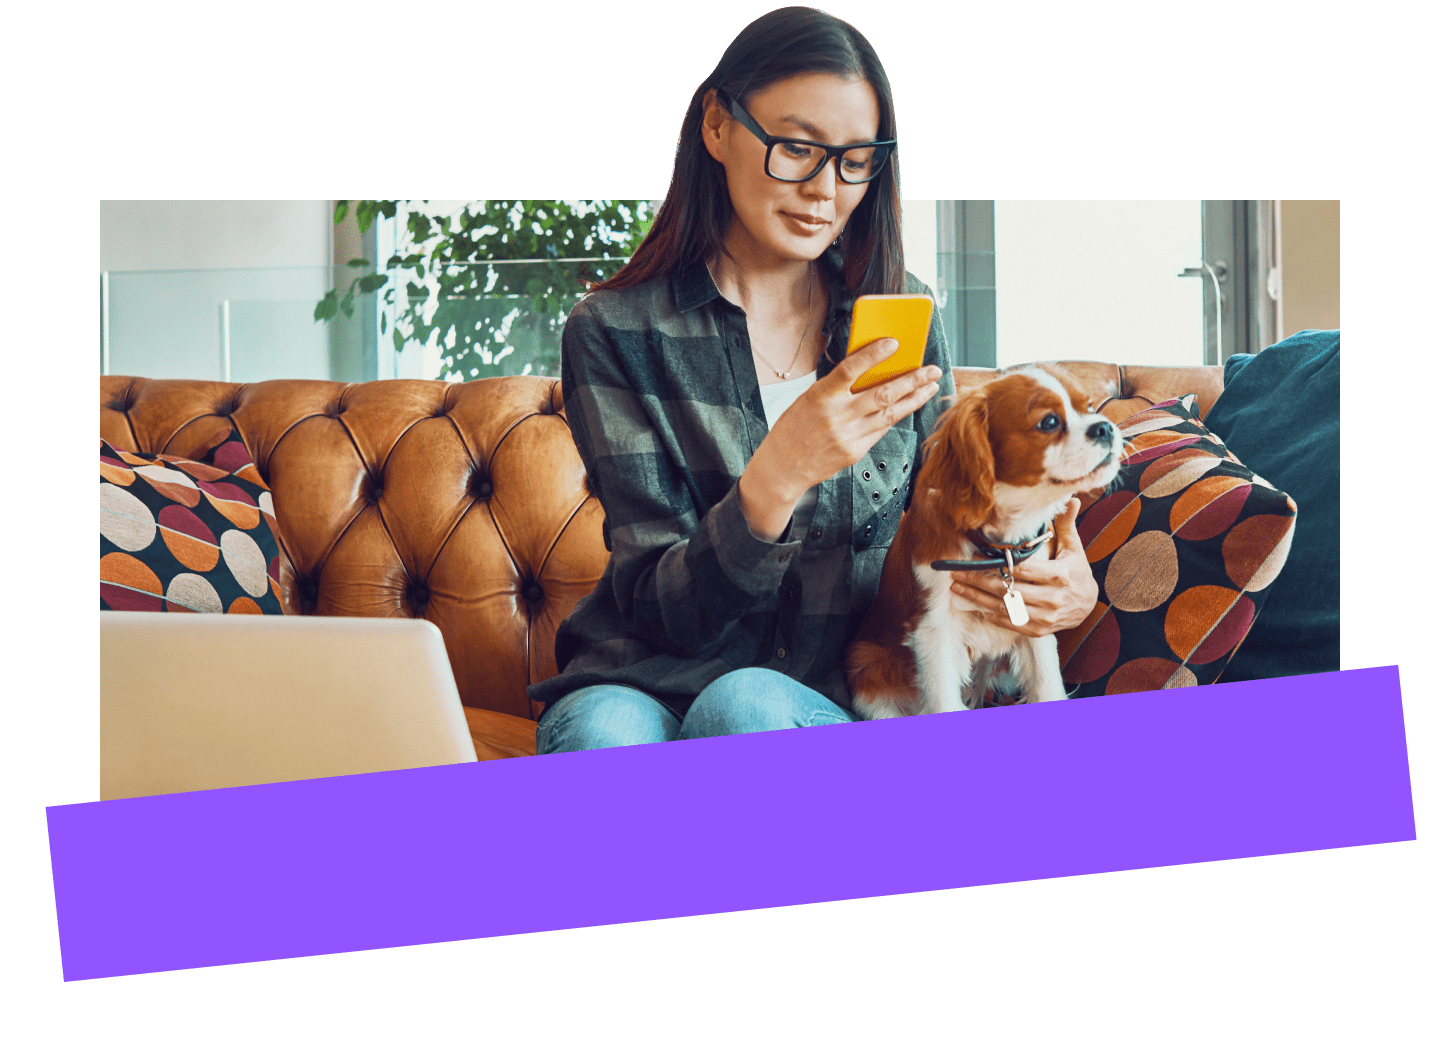 Empleado a distancia que utiliza de forma segura un dispositivo móvil para realizar gestiones mientras trabaja desde casa con su perro.